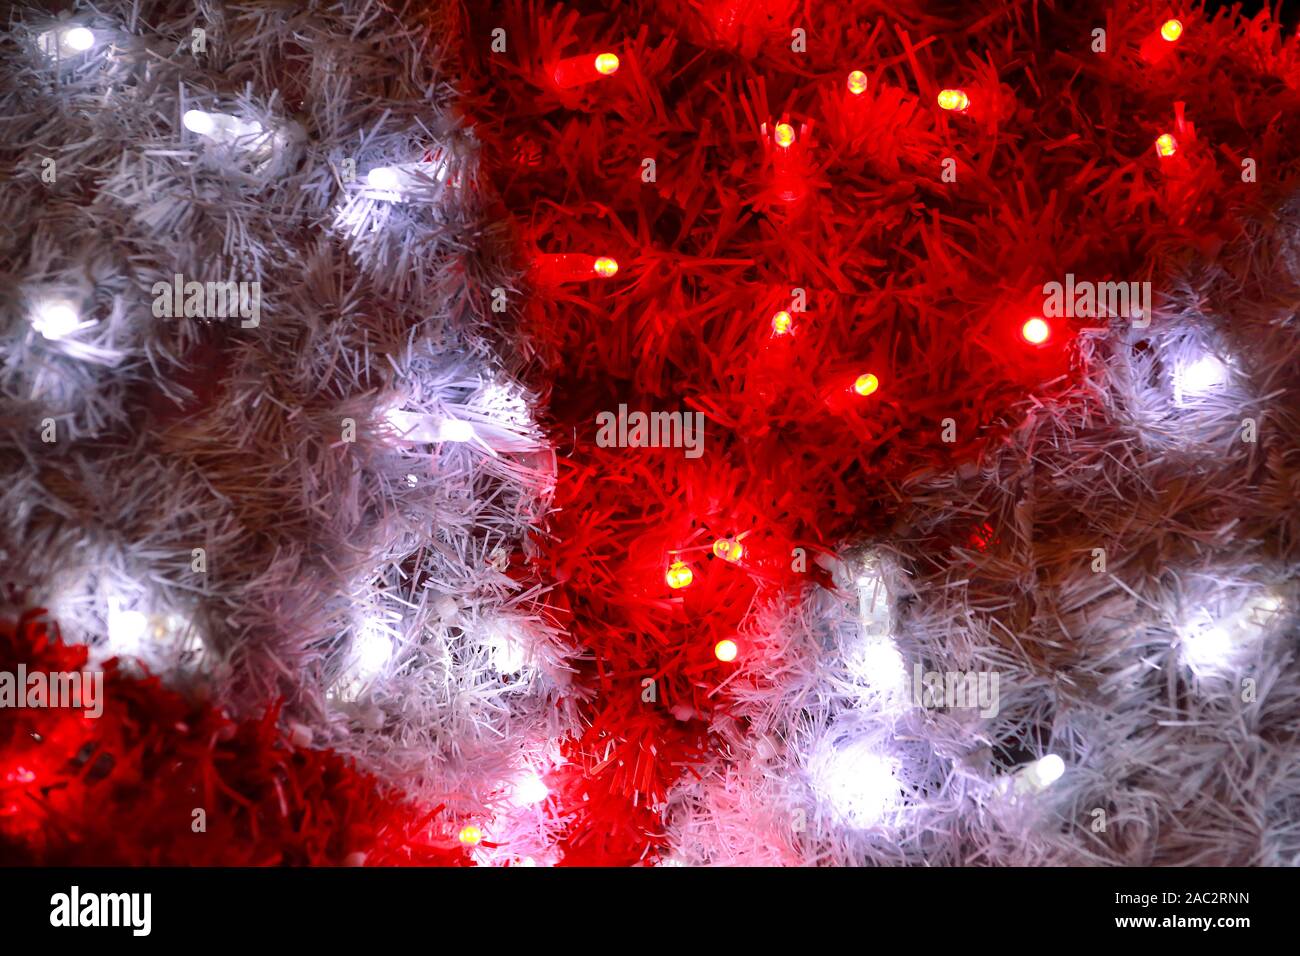 Teil von Weihnachten dekorative rote und weiße Blinkleuchten, hautnah. Straße Detail des Neuen Jahres und Weihnachtsschmuck, string Reis Glühlampen. Stockfoto